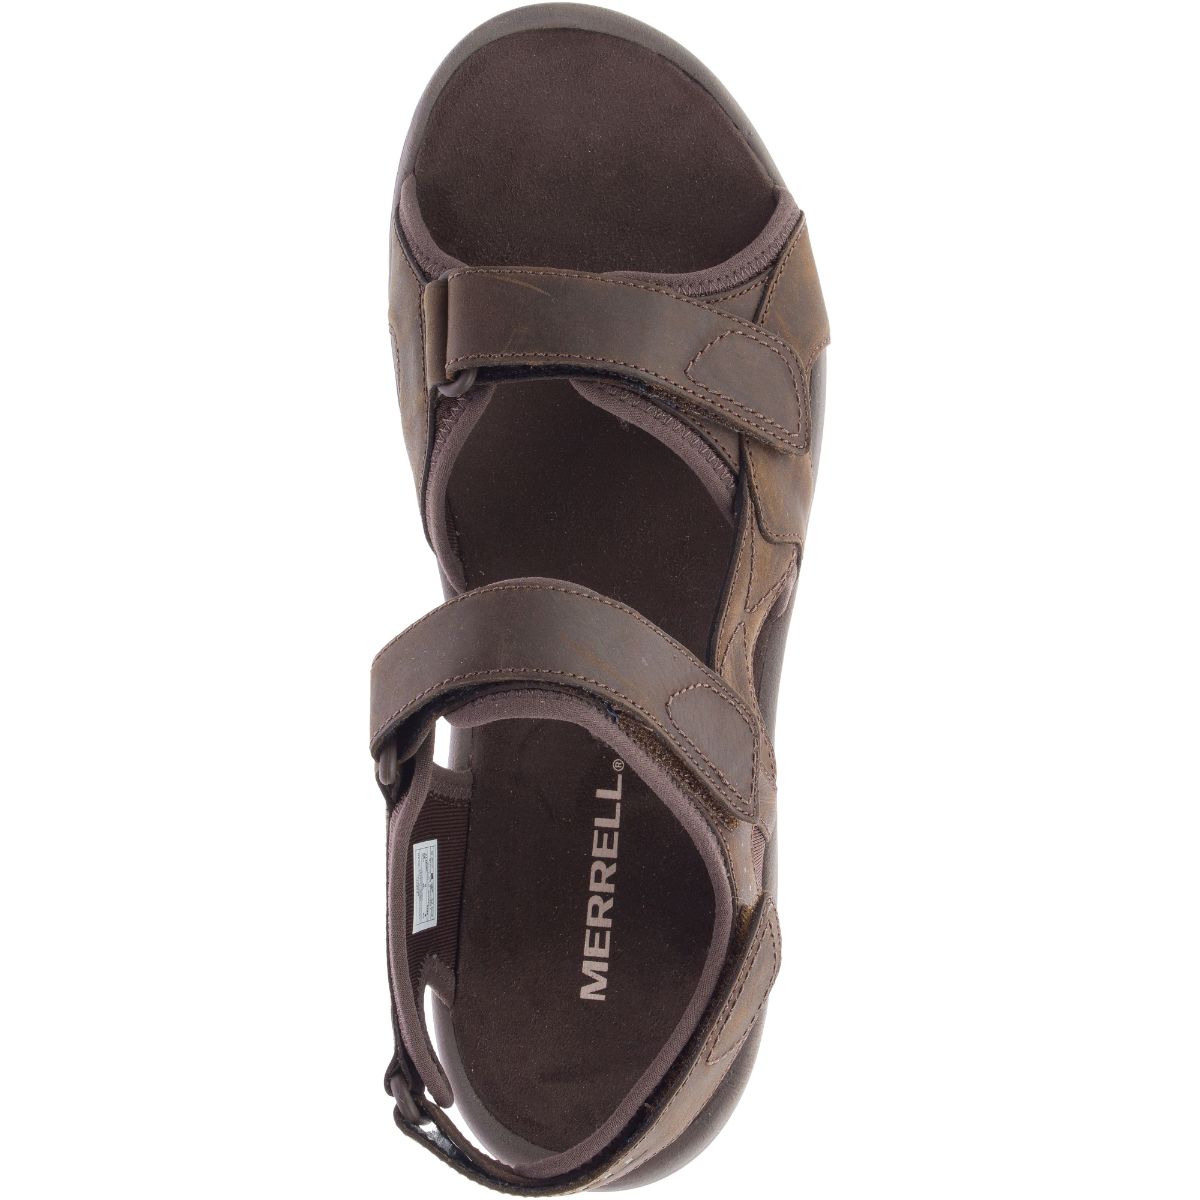 Sandspur 2 Convert Men's Sandal NZ | Merrell NZ #colour_earth